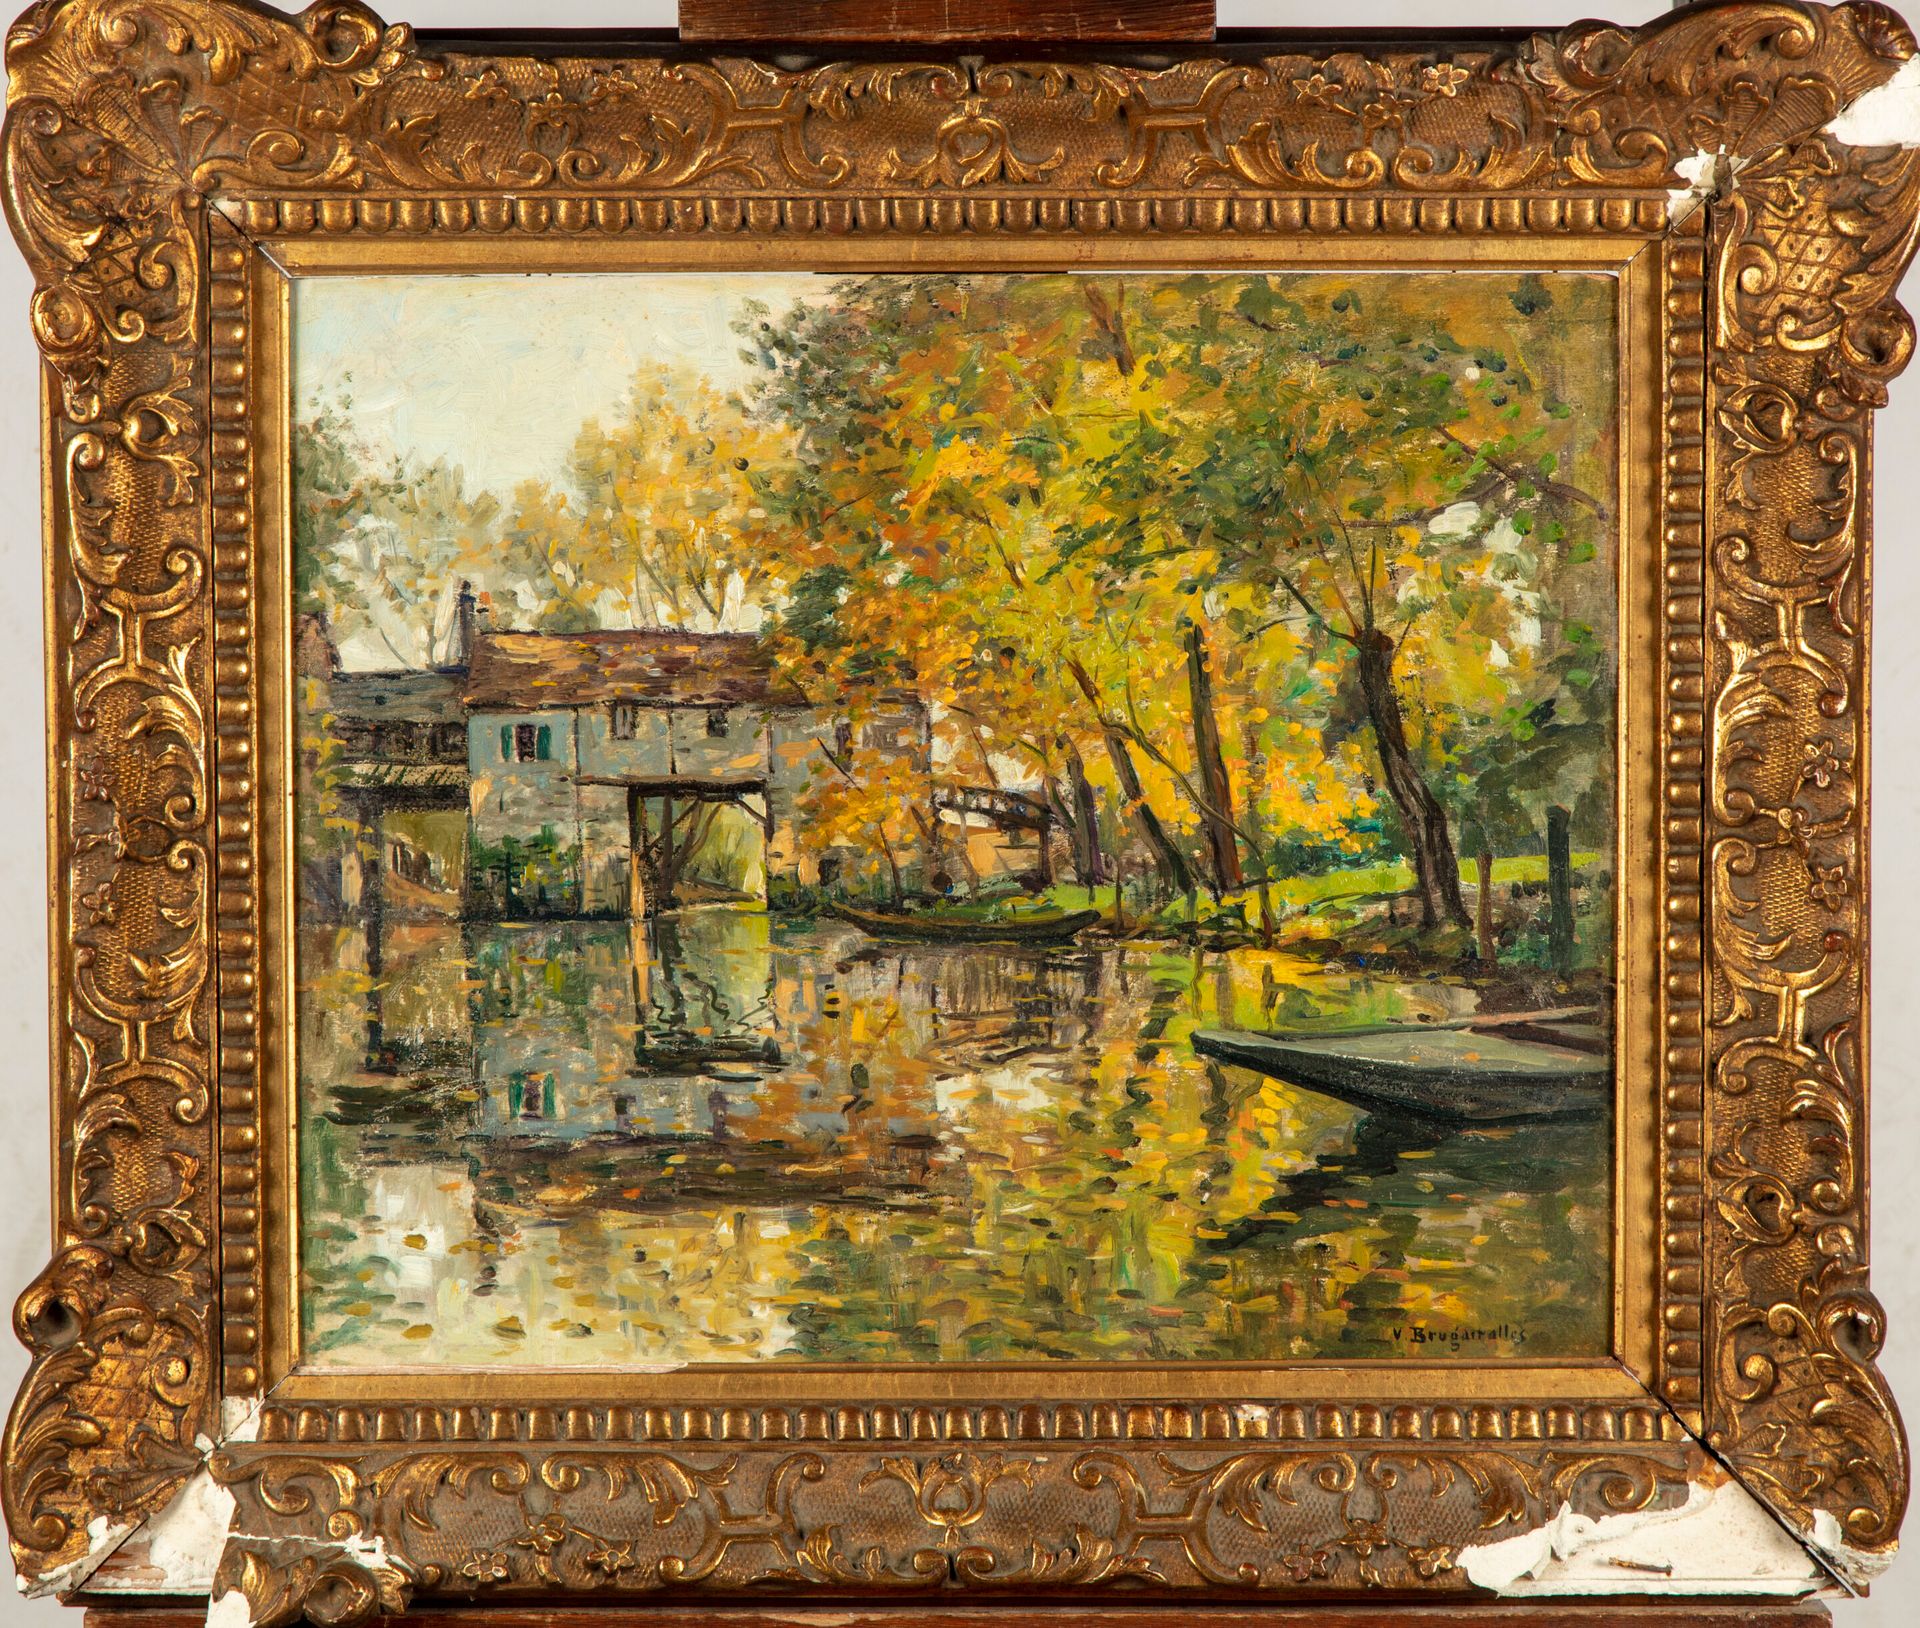 Null 维克托-布吕盖尔(1869-1936)

景观与磨坊

板面油画，右下角有签名

38 x 46 厘米

框架的损坏